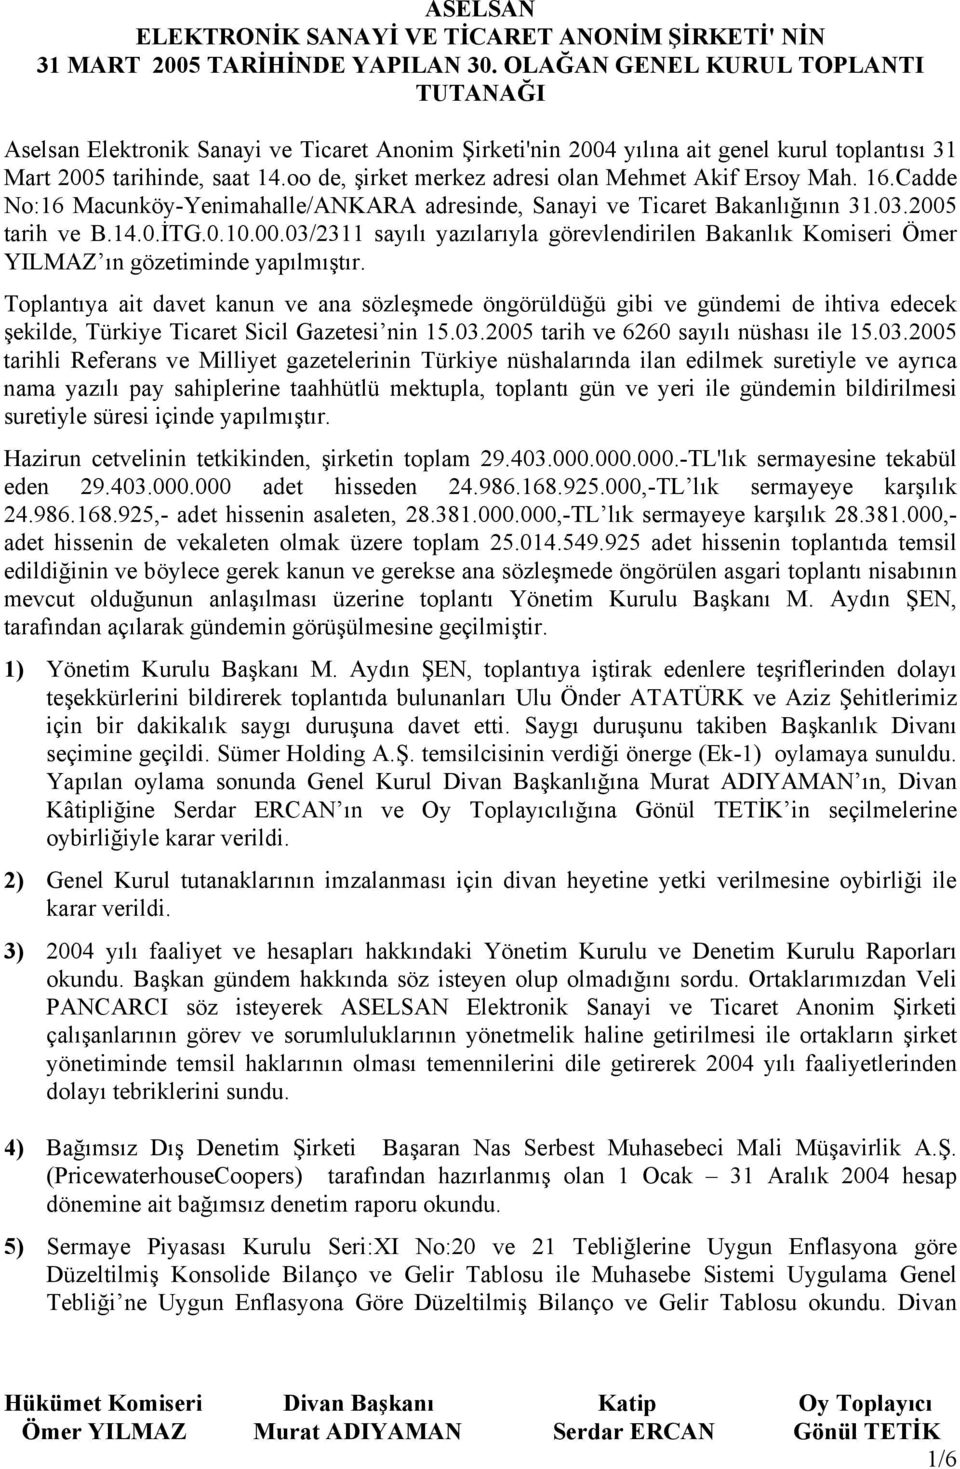 oo de, şirket merkez adresi olan Mehmet Akif Ersoy Mah. 16.Cadde No:16 Macunköy-Yenimahalle/ANKARA adresinde, Sanayi ve Ticaret Bakanlığının 31.03.2005